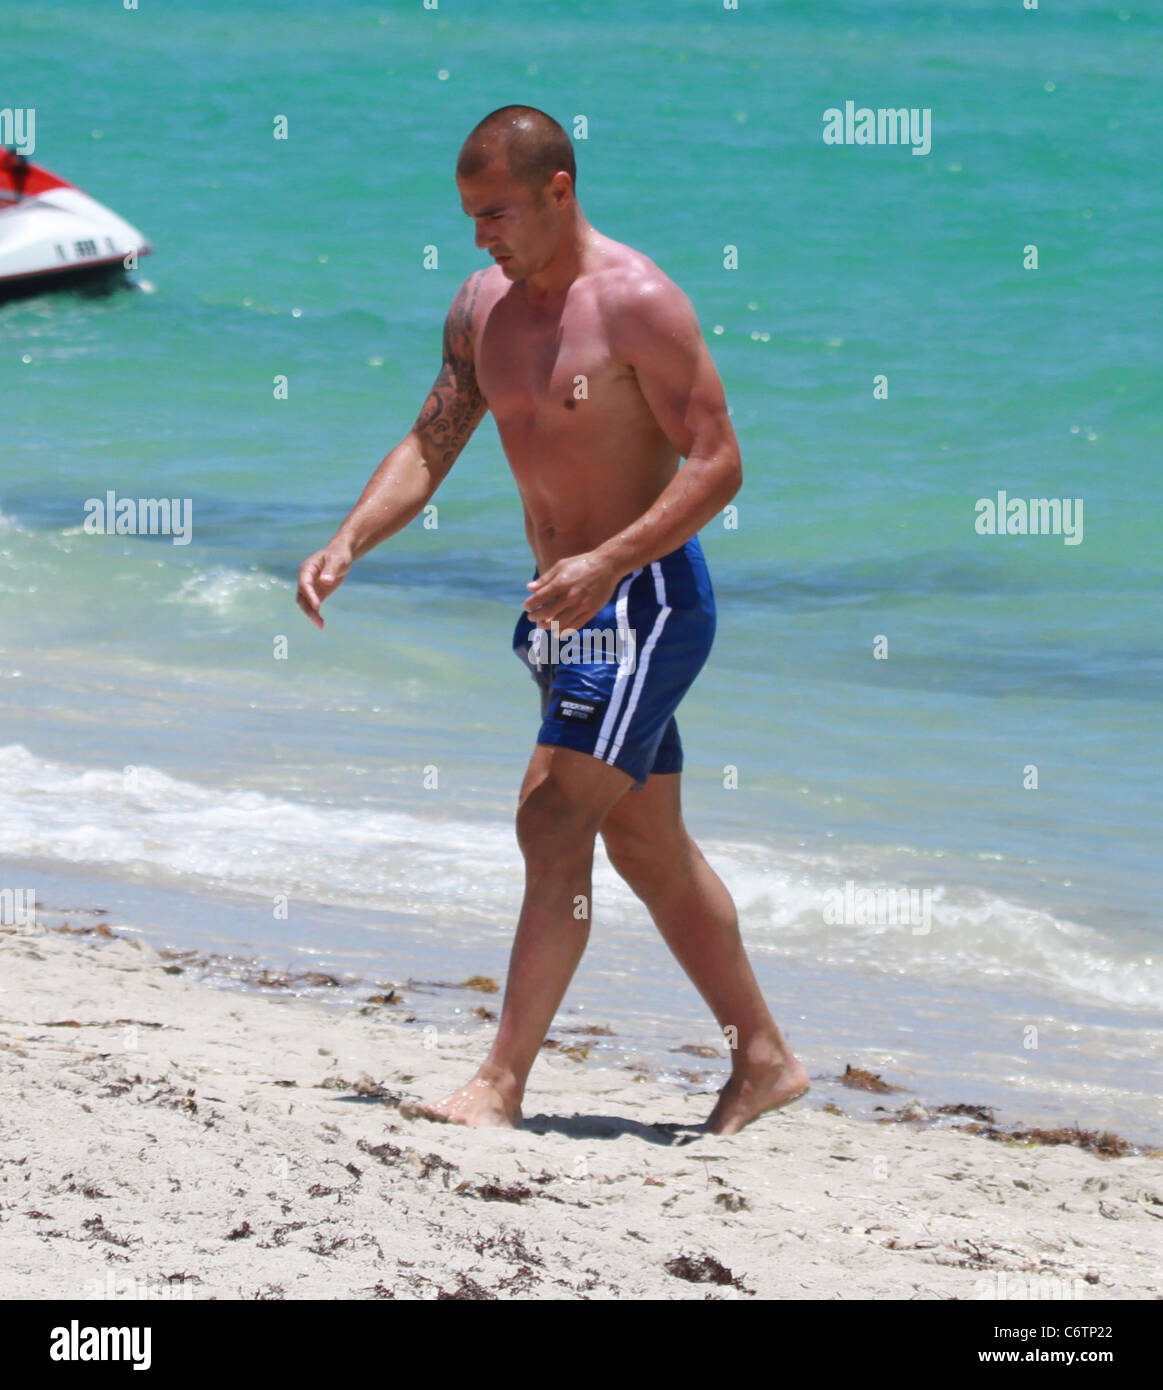 Fabio Cannavaro il calcio italiano player godendo il sole, il mare e la  sabbia sulla spiaggia di Miami Miami, Stati Uniti d'America - 21.05.10 Foto  stock - Alamy